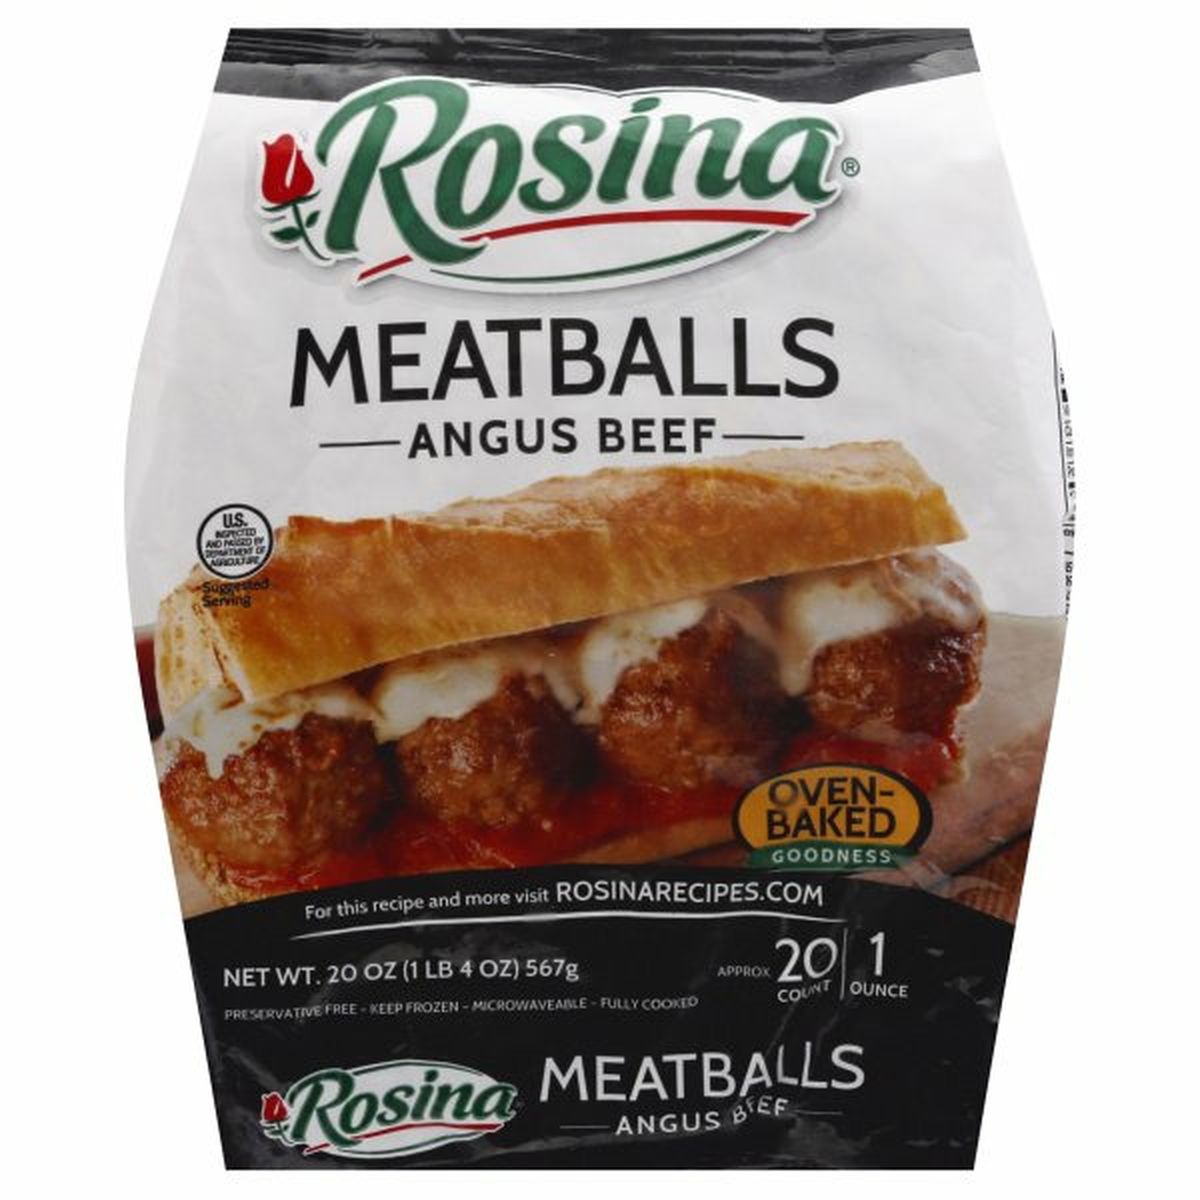 Calories in Rosina Meatballs, Angus Beef